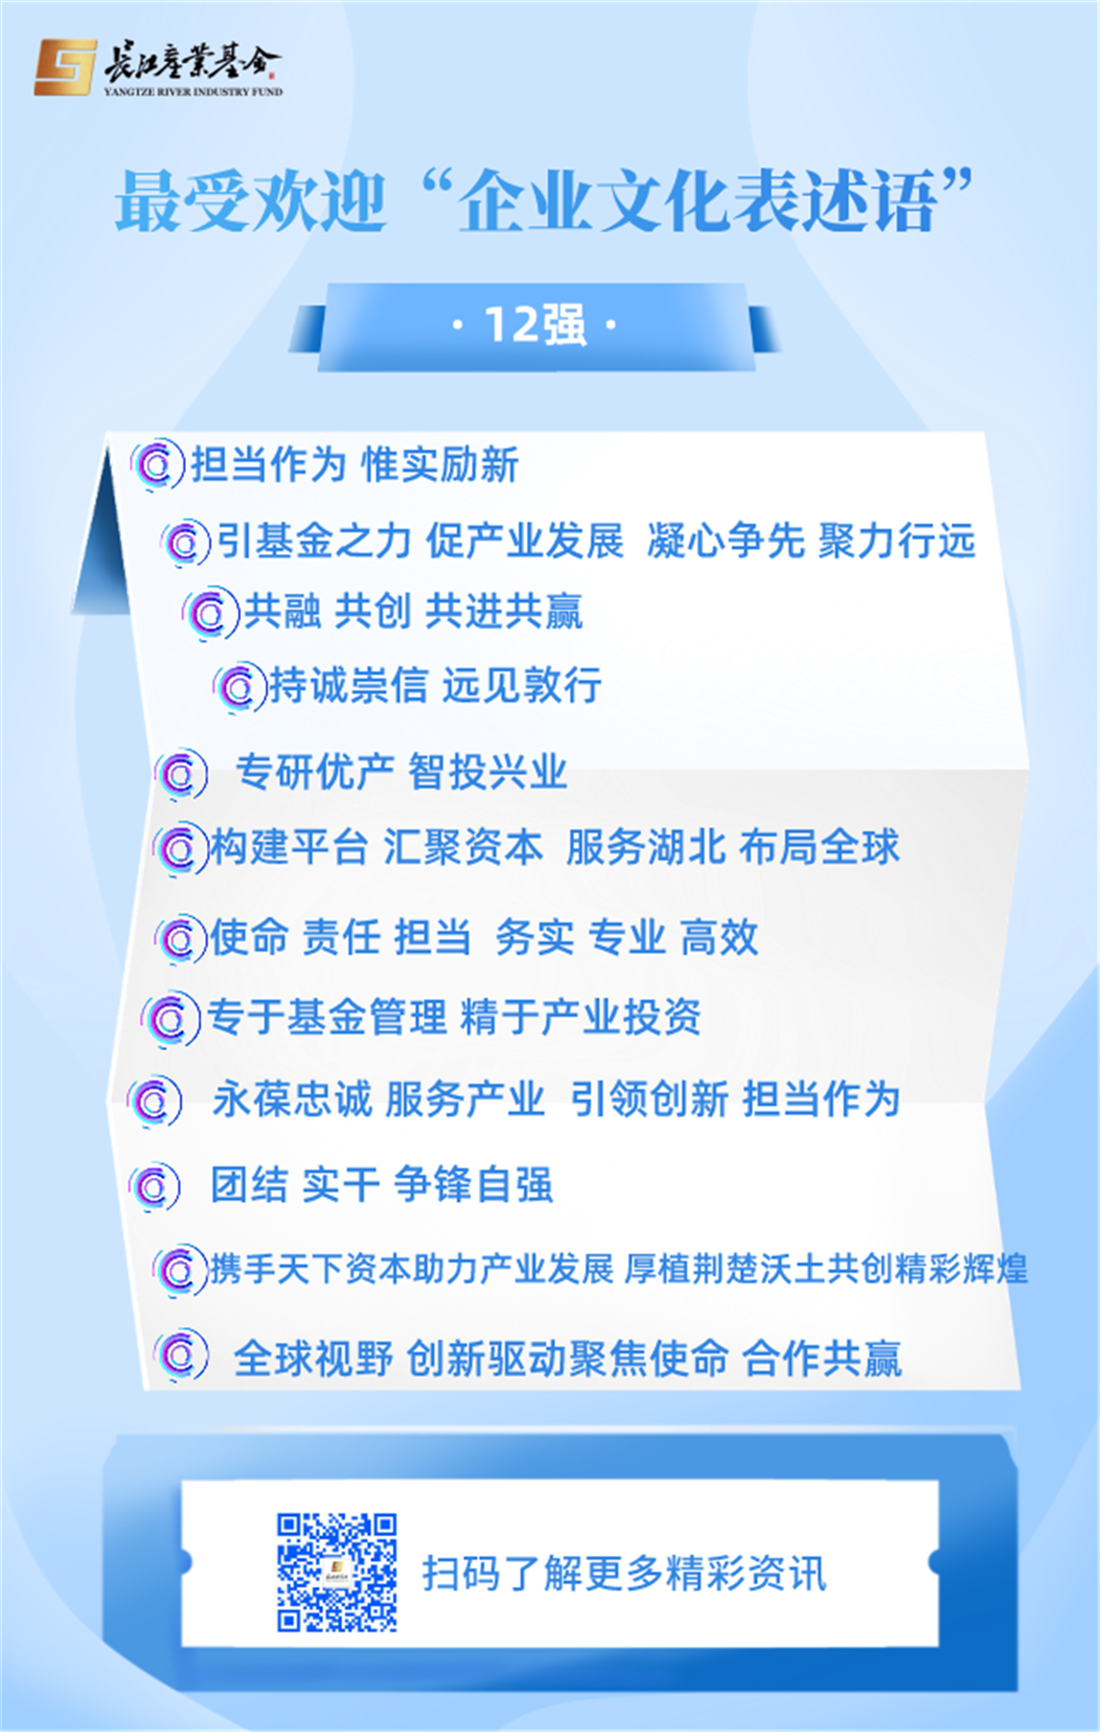 关于长江基金管理公司最受欢迎的12条“企业文化表述语”的公示